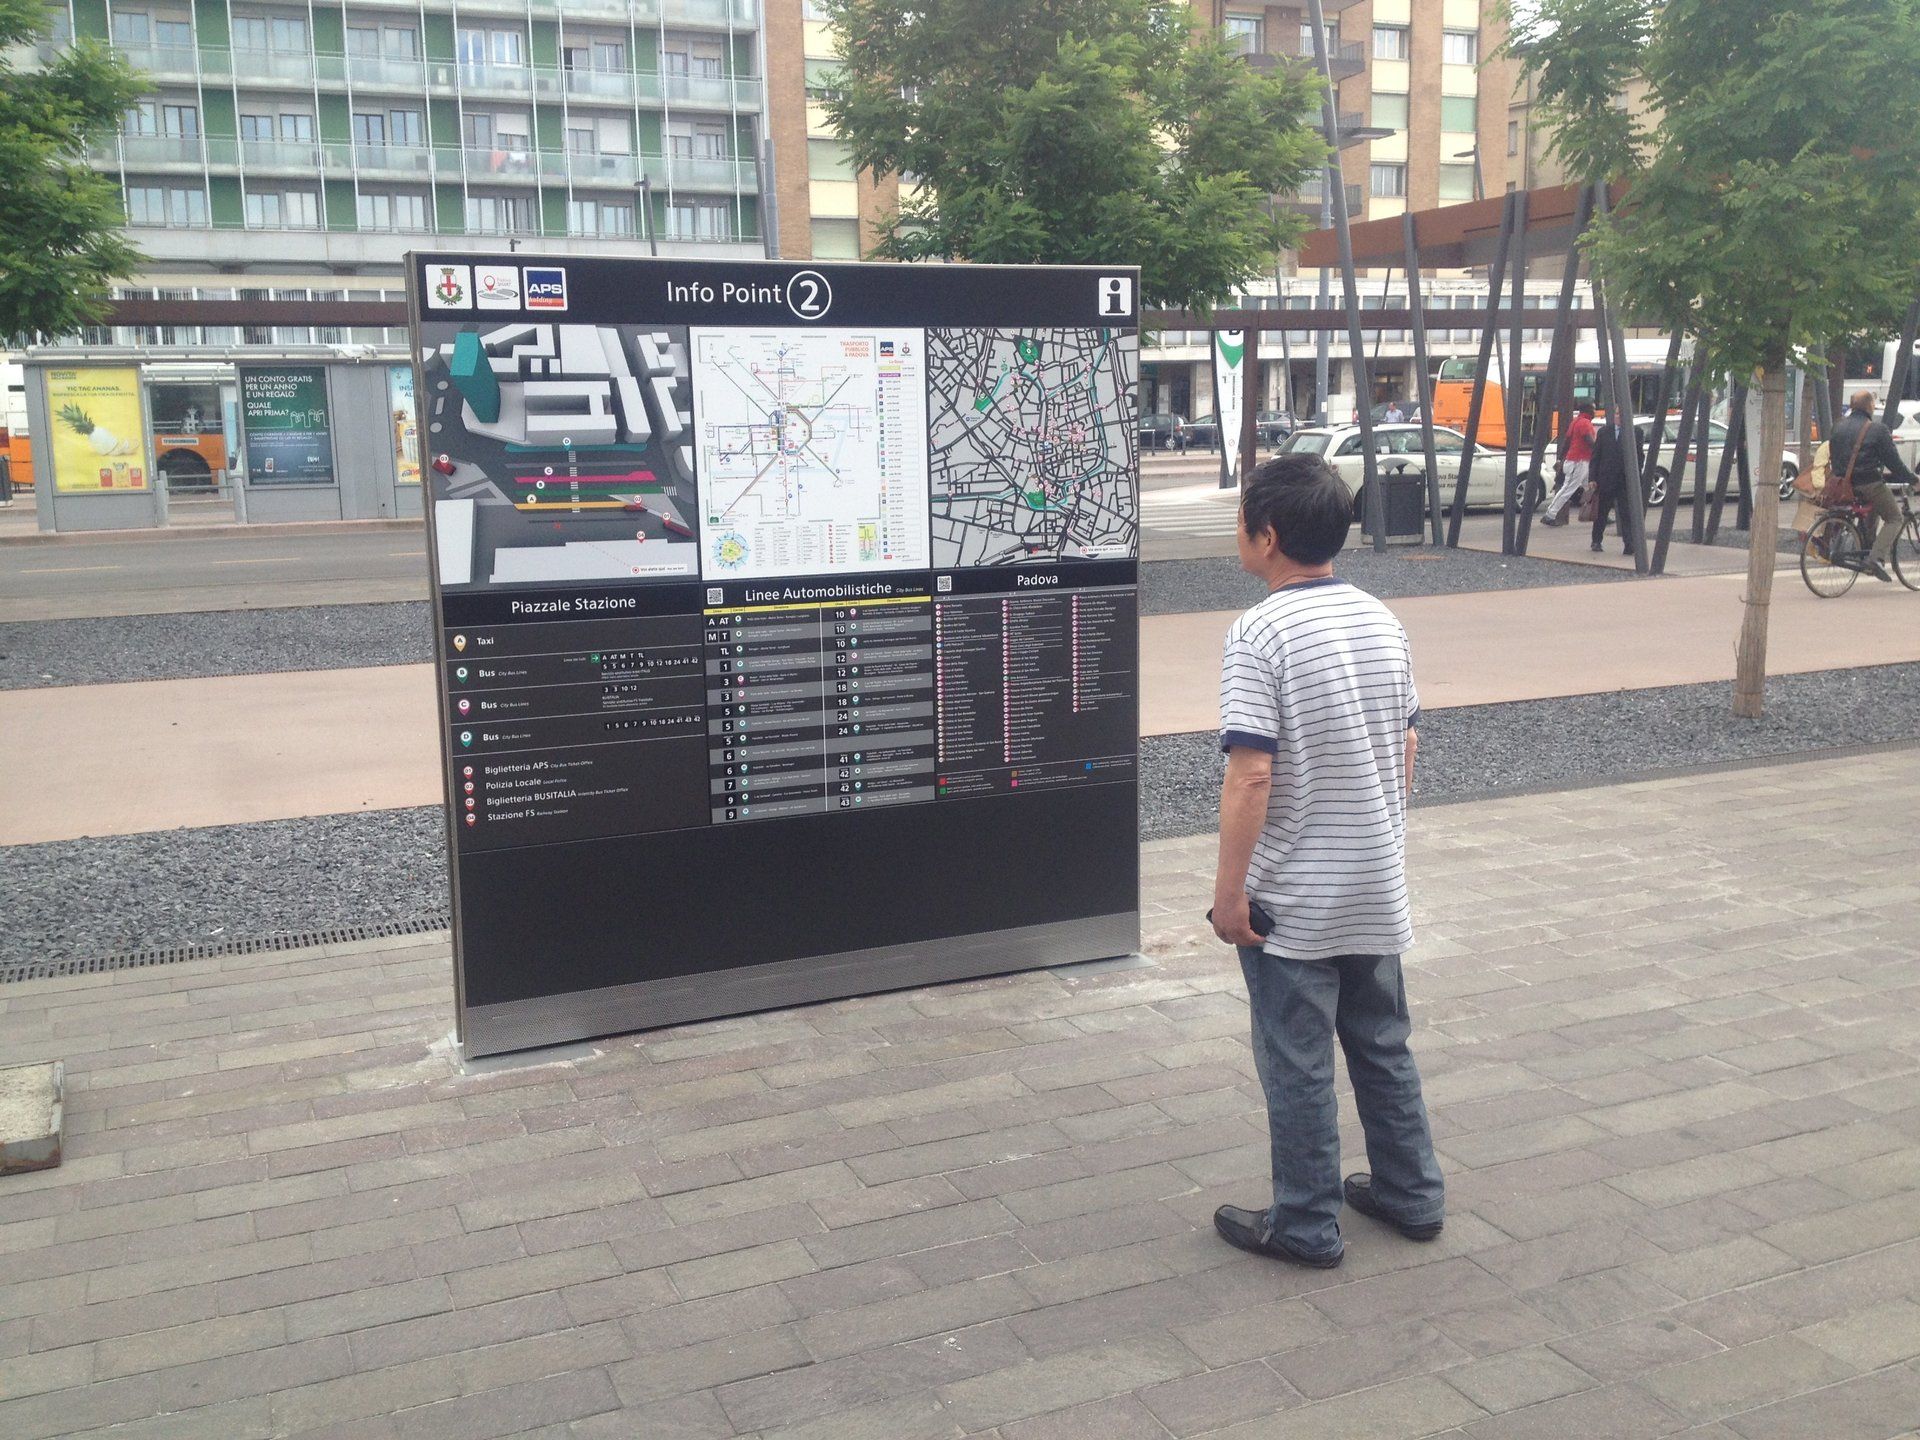 cartellone con mappa e indicazioni in una piazza